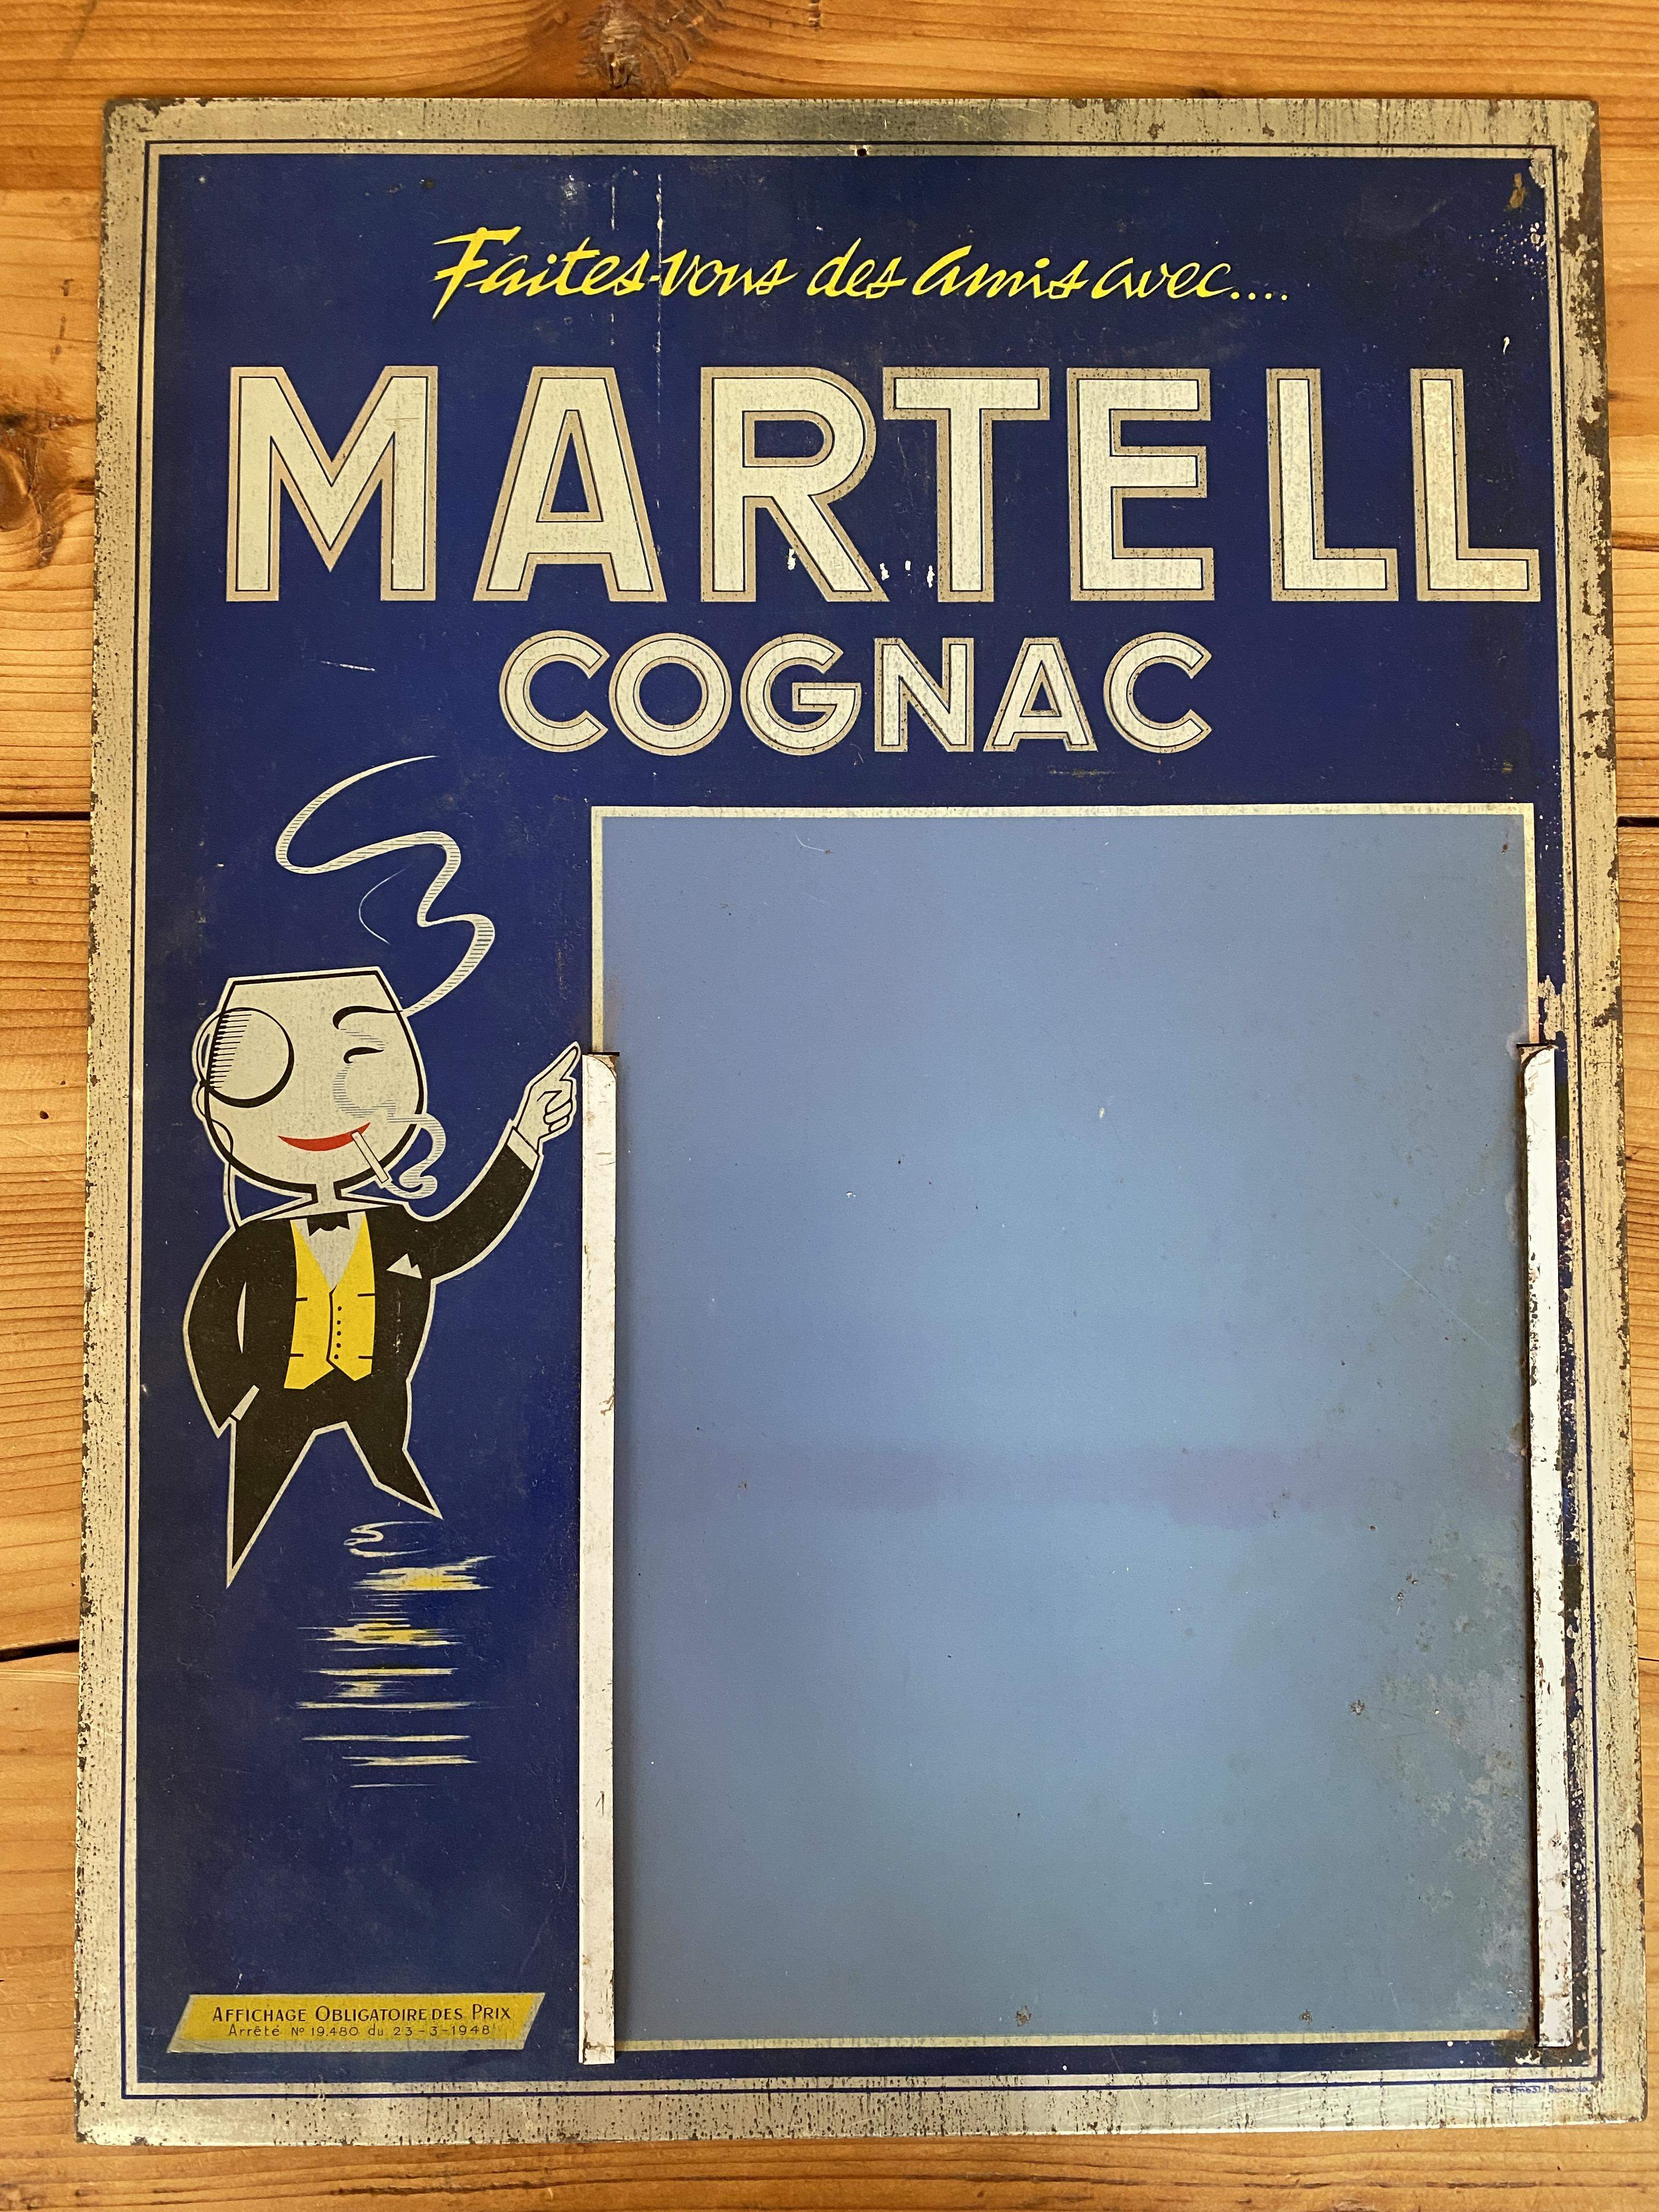 Getränkekarte Martell Cognac von 1948